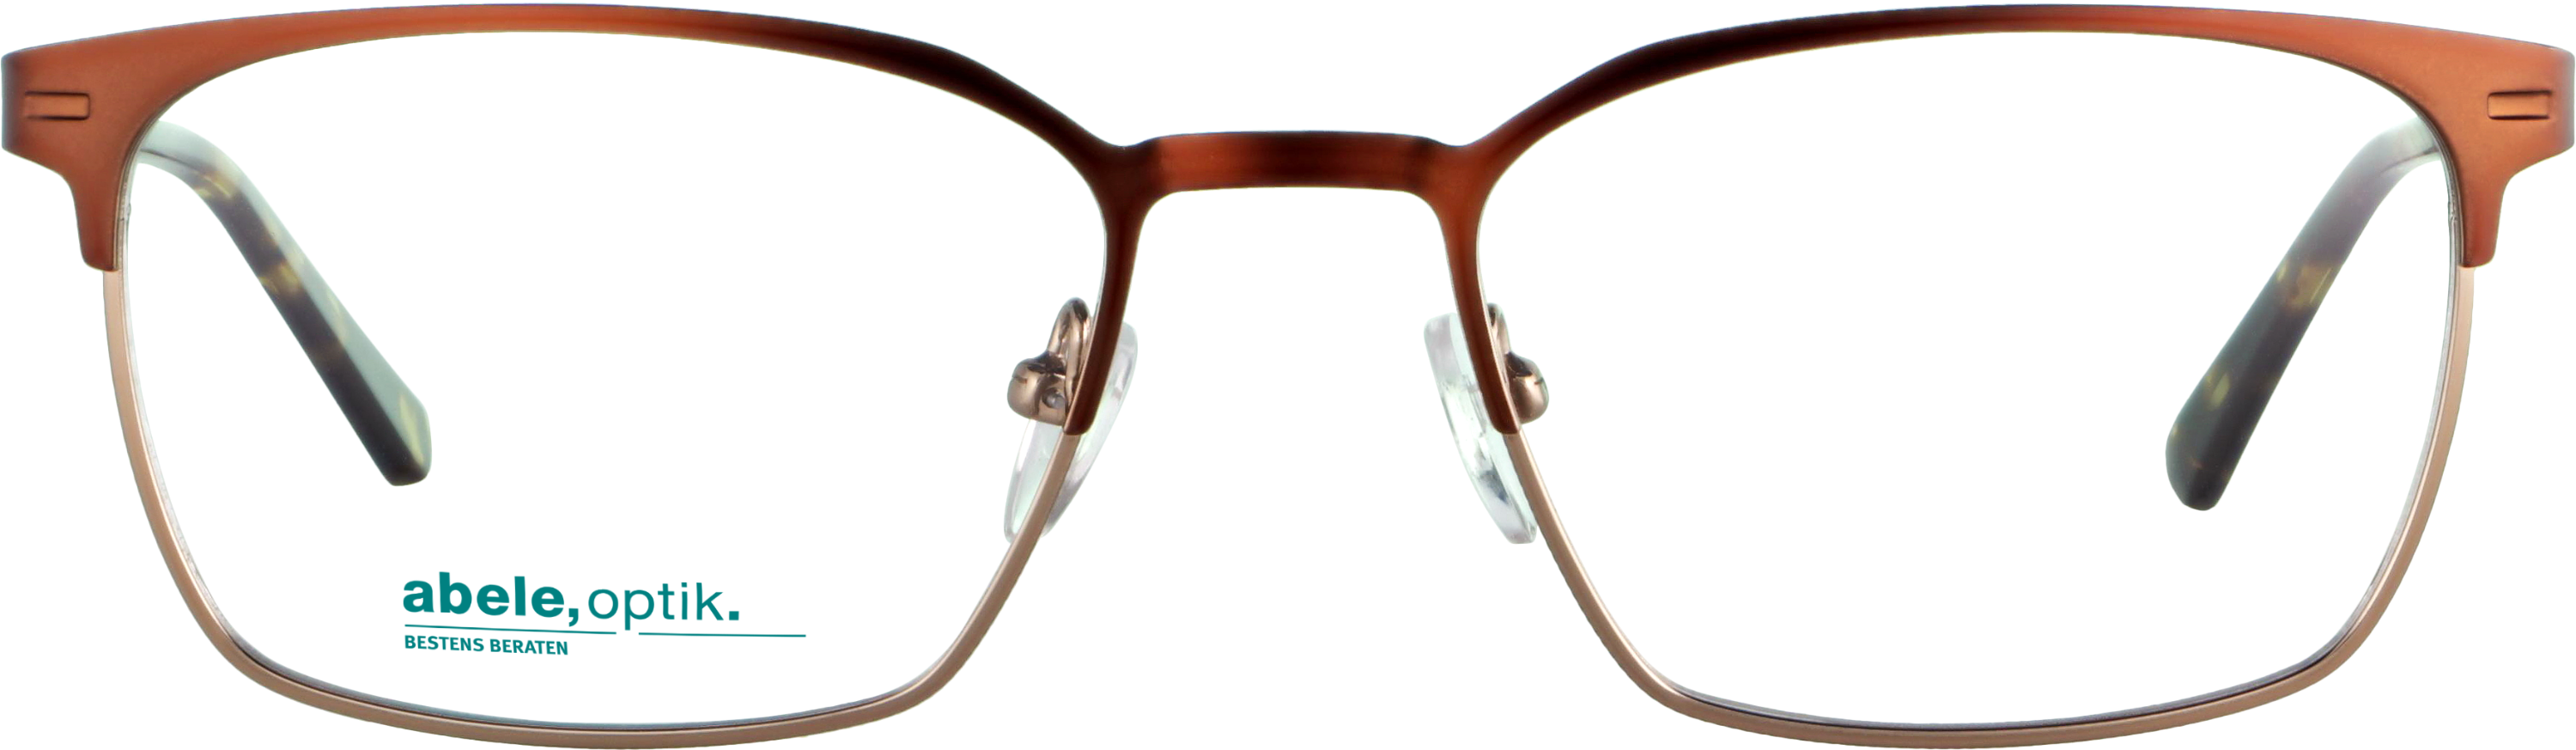 Das Bild zeigt die Korrektionsbrille 141411 von der Marke Abele Optik in braun.